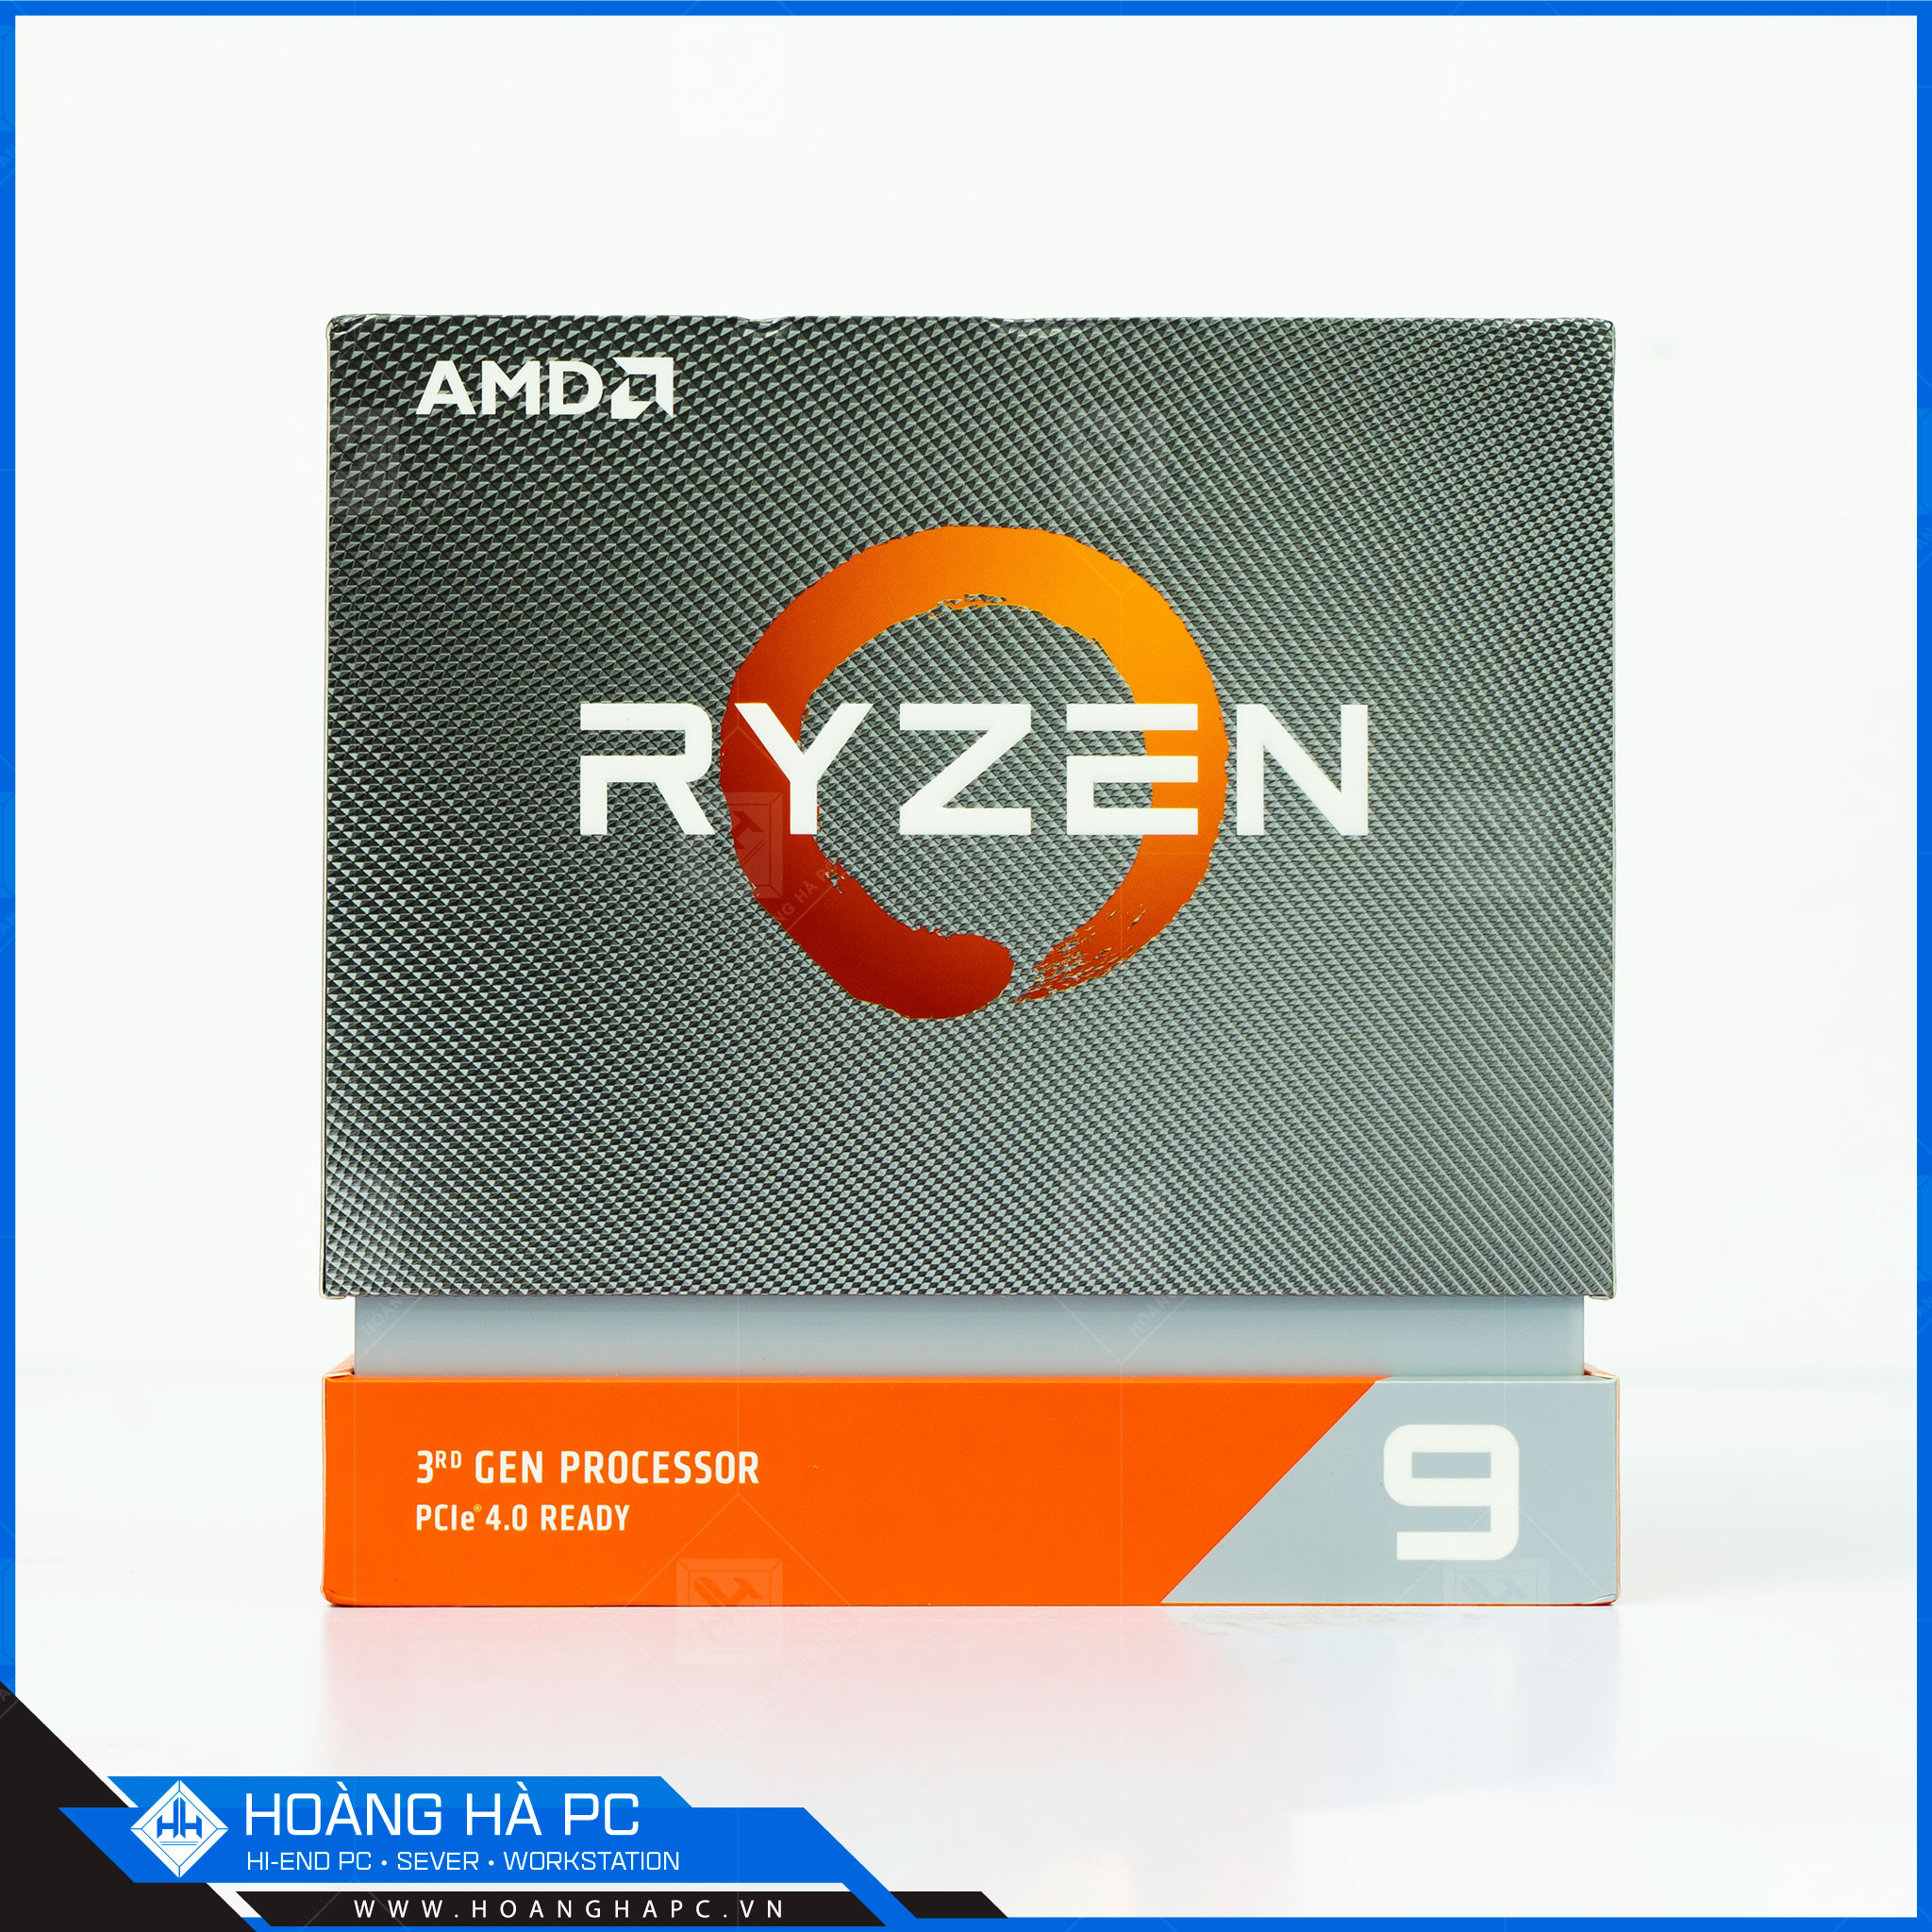 CPU AMD Ryzen 9, hiệu năng quá xuất sắc, áp đảo các đối thủ cùng phân khúc